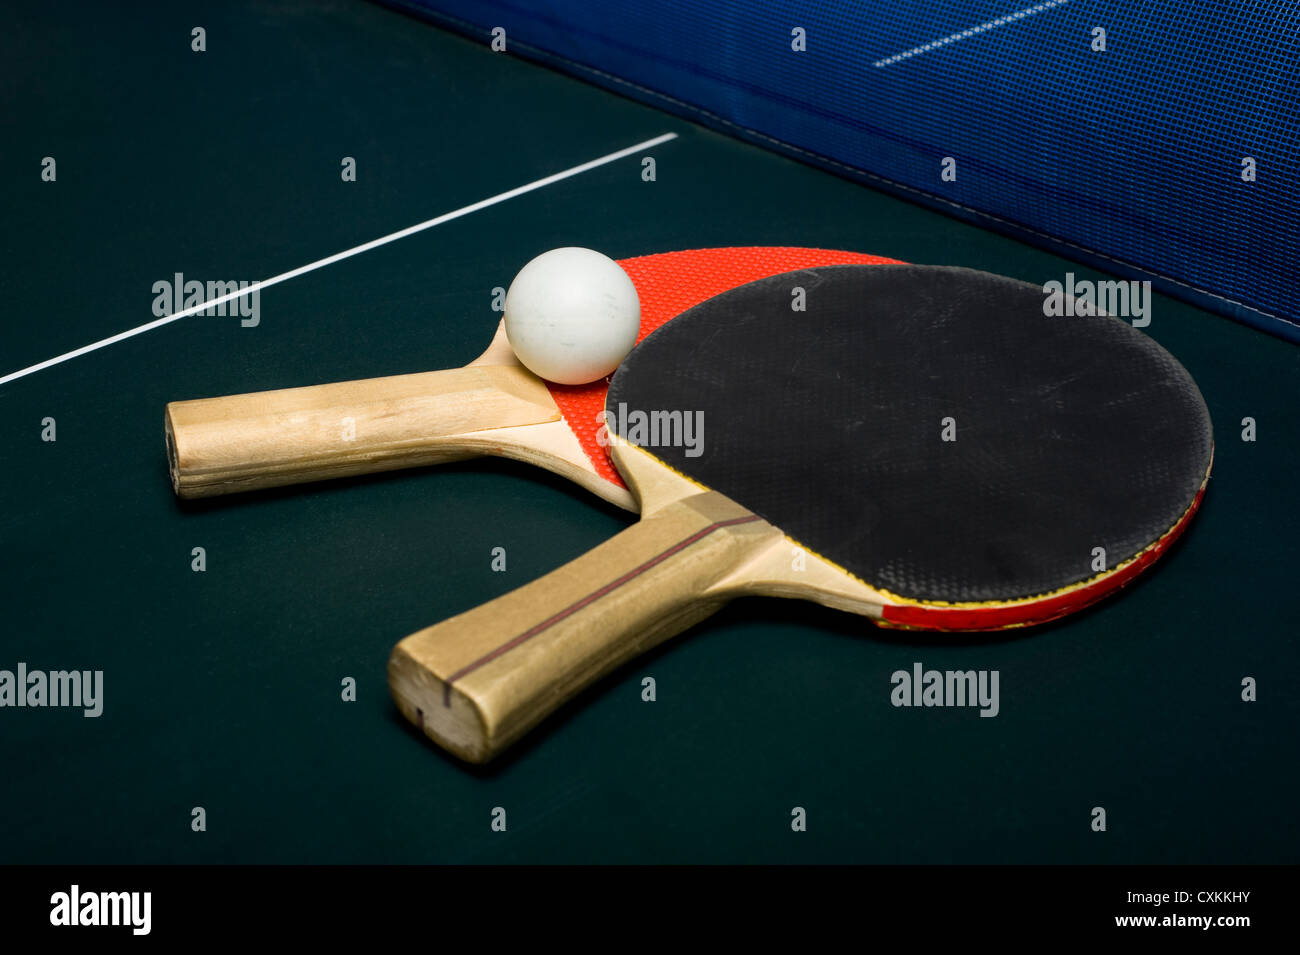 Le ping-pong ou tennis de table l'équipement ou du matériel sur une surface de jeu Banque D'Images